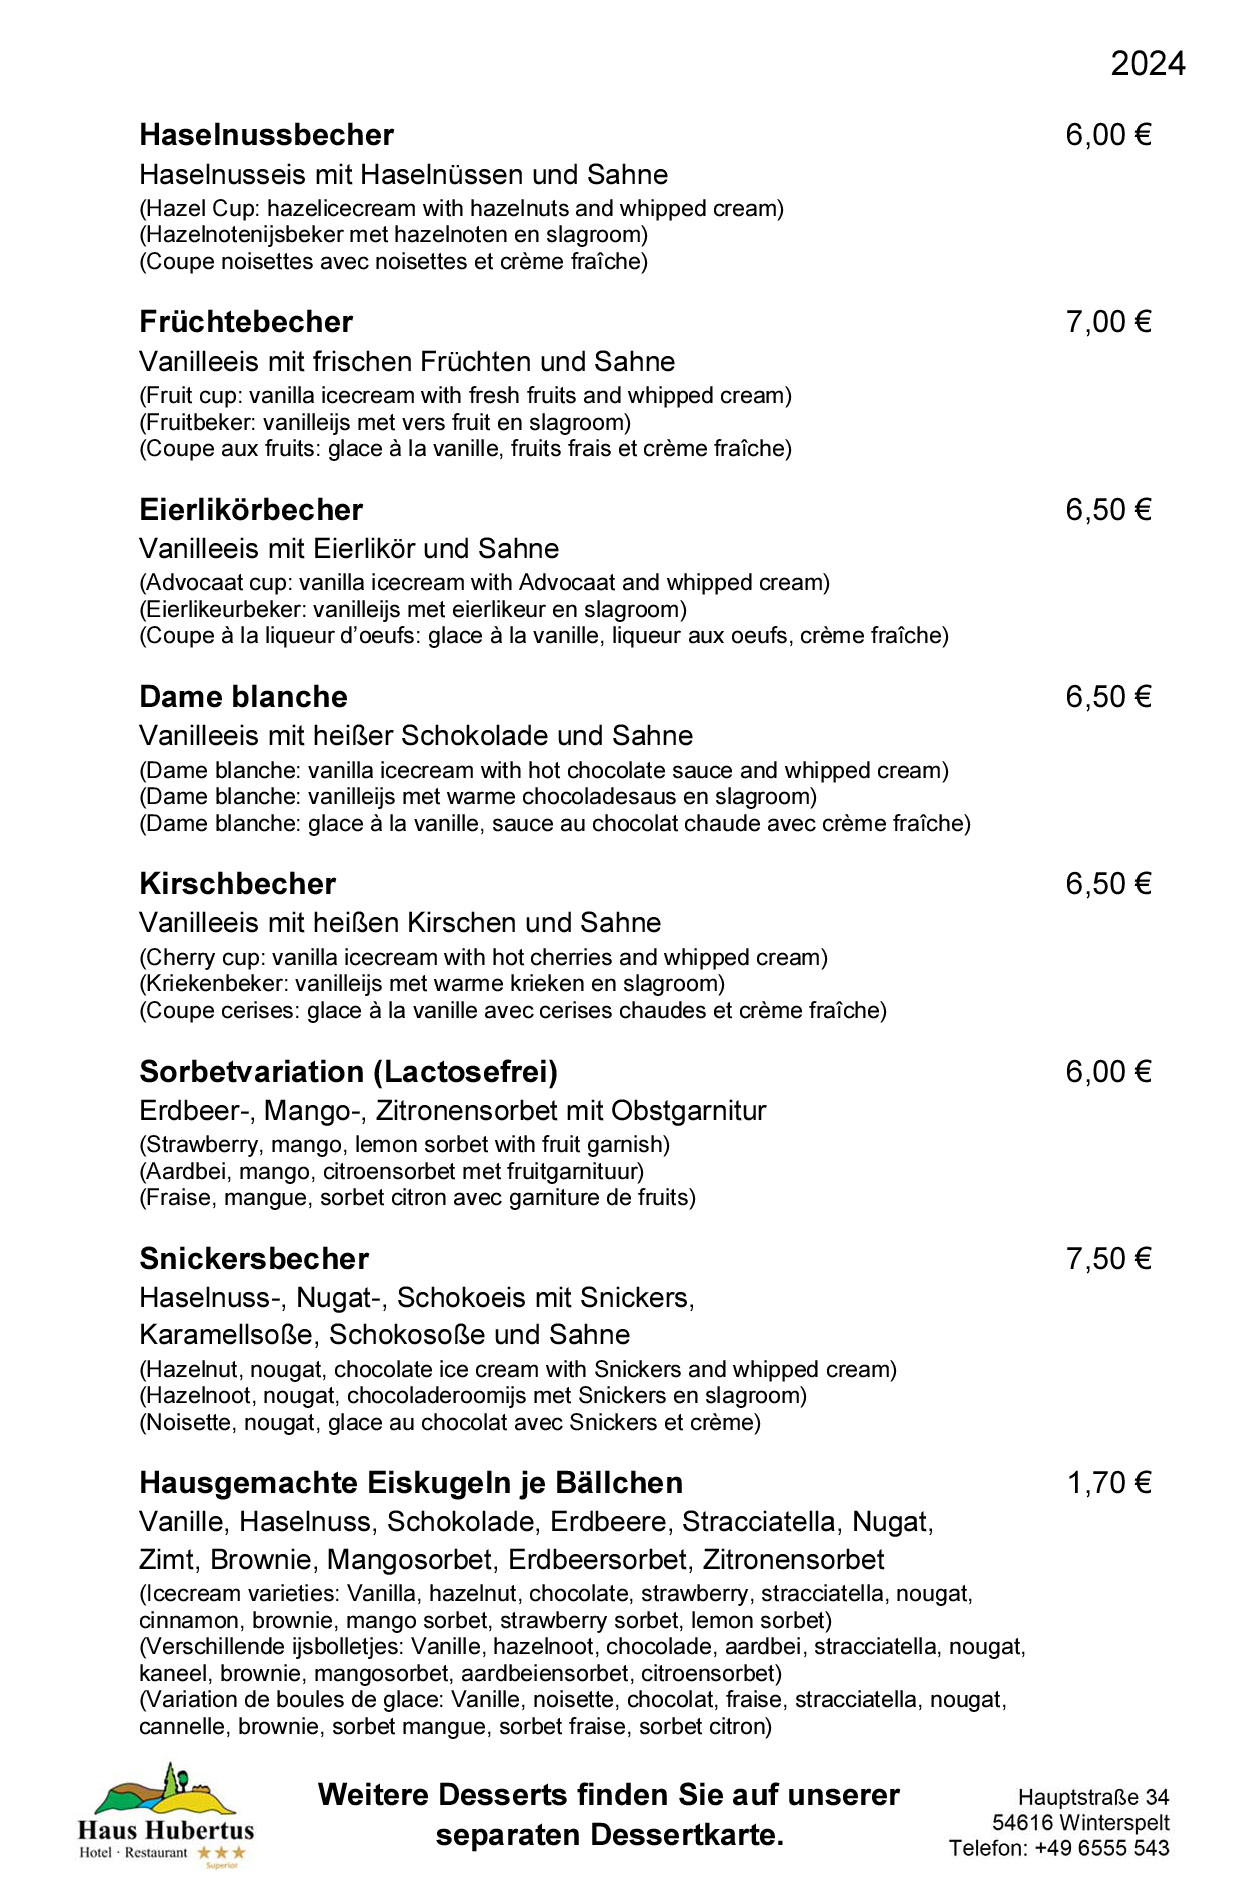 Hotel - Restaurant Haus Hubertus - Speisekarte 02/2023 - Die Klassiker - Seite 4